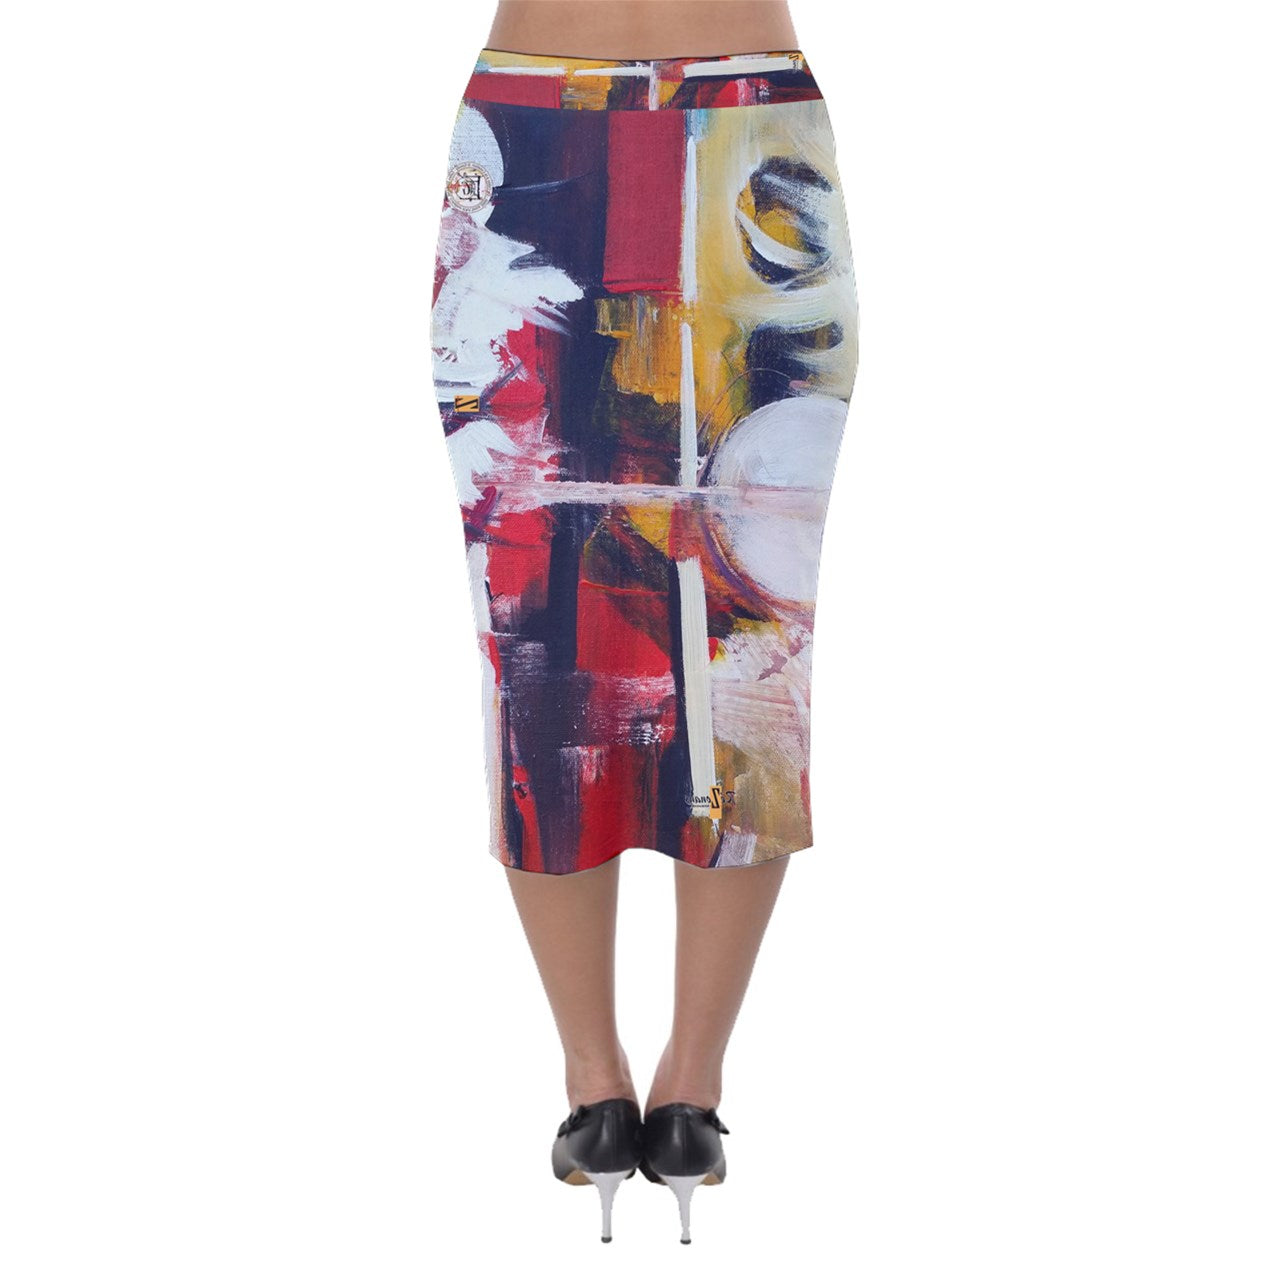 "Kiltika" velor pencil skirt